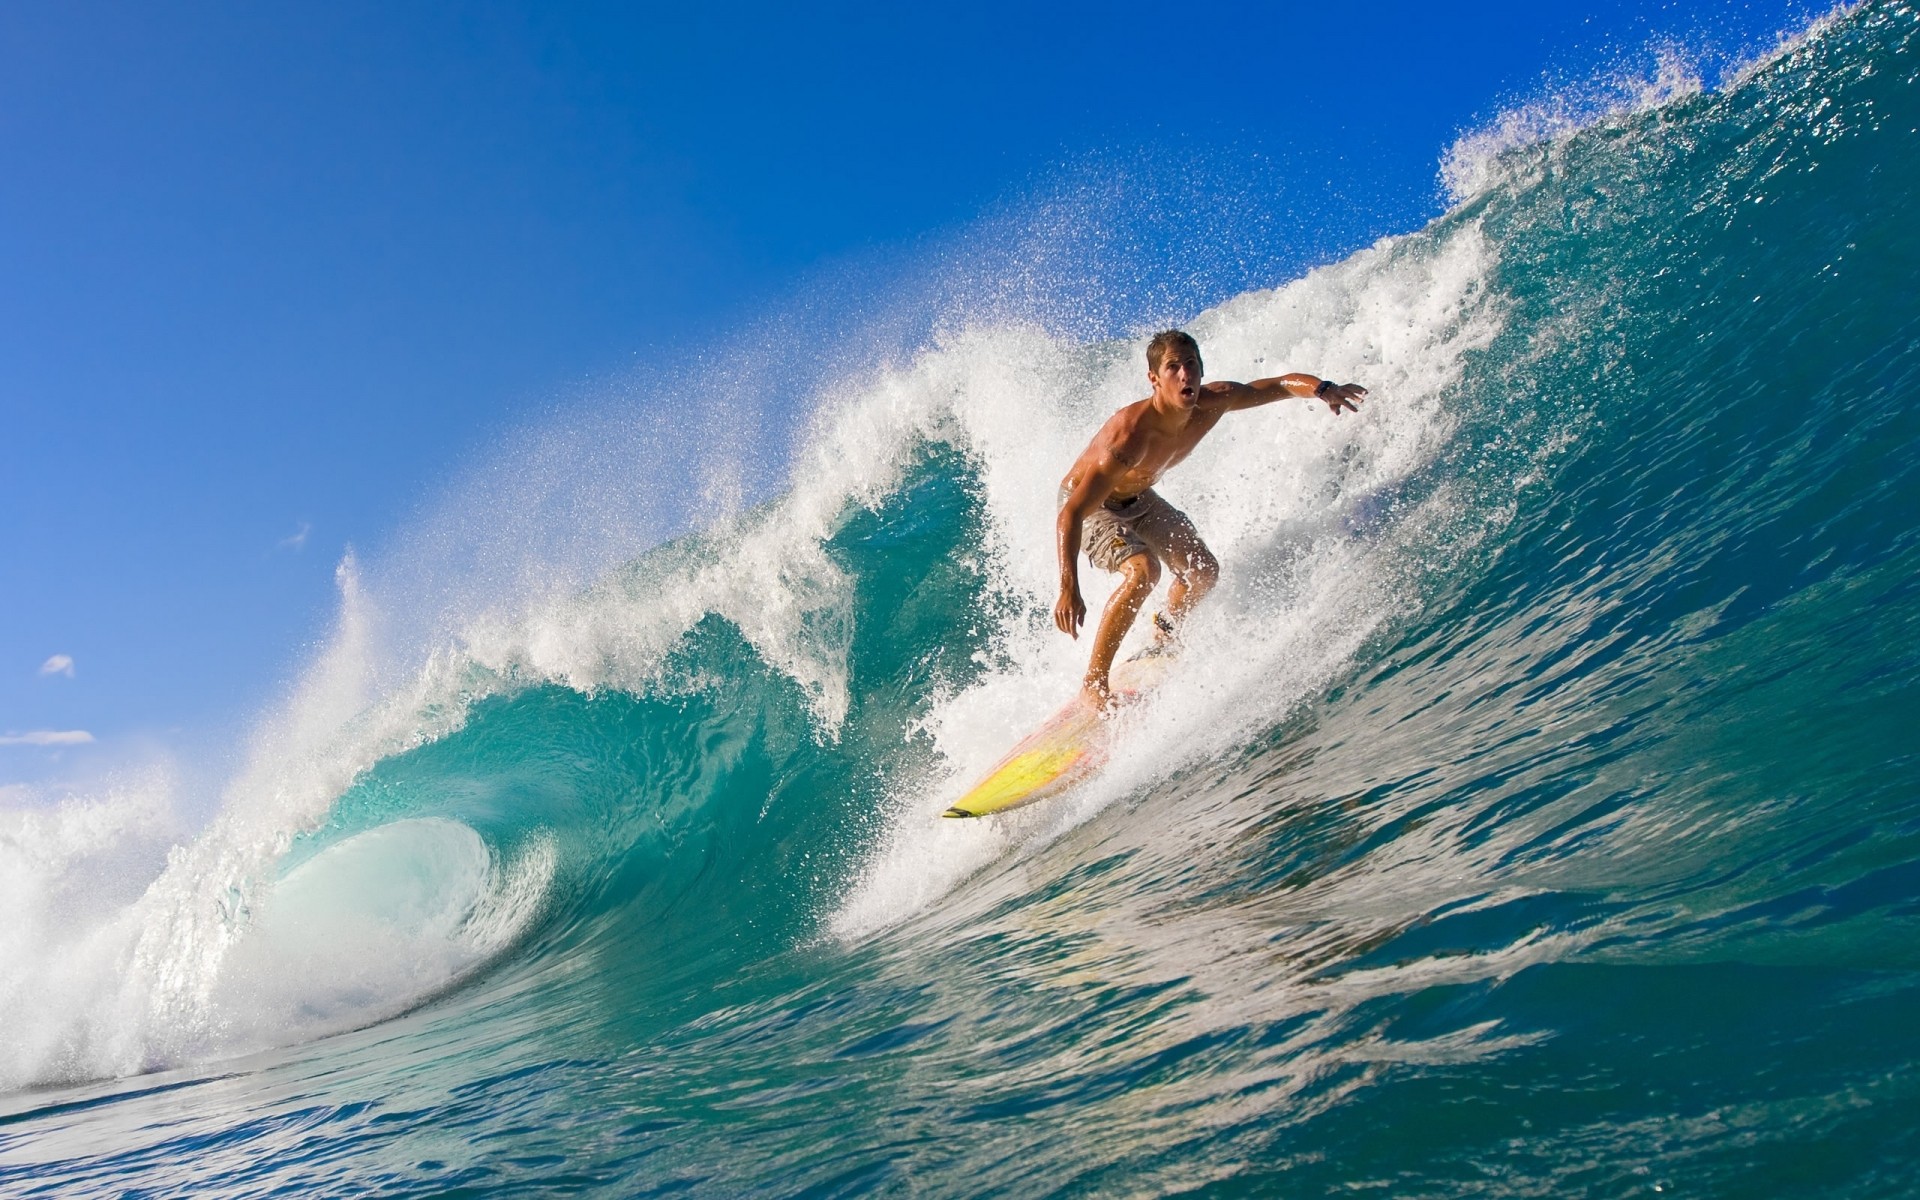 surfing surf action water sports motion water wave recreation ocean spray exhilaration splash swell sea fun beach leisure athlete